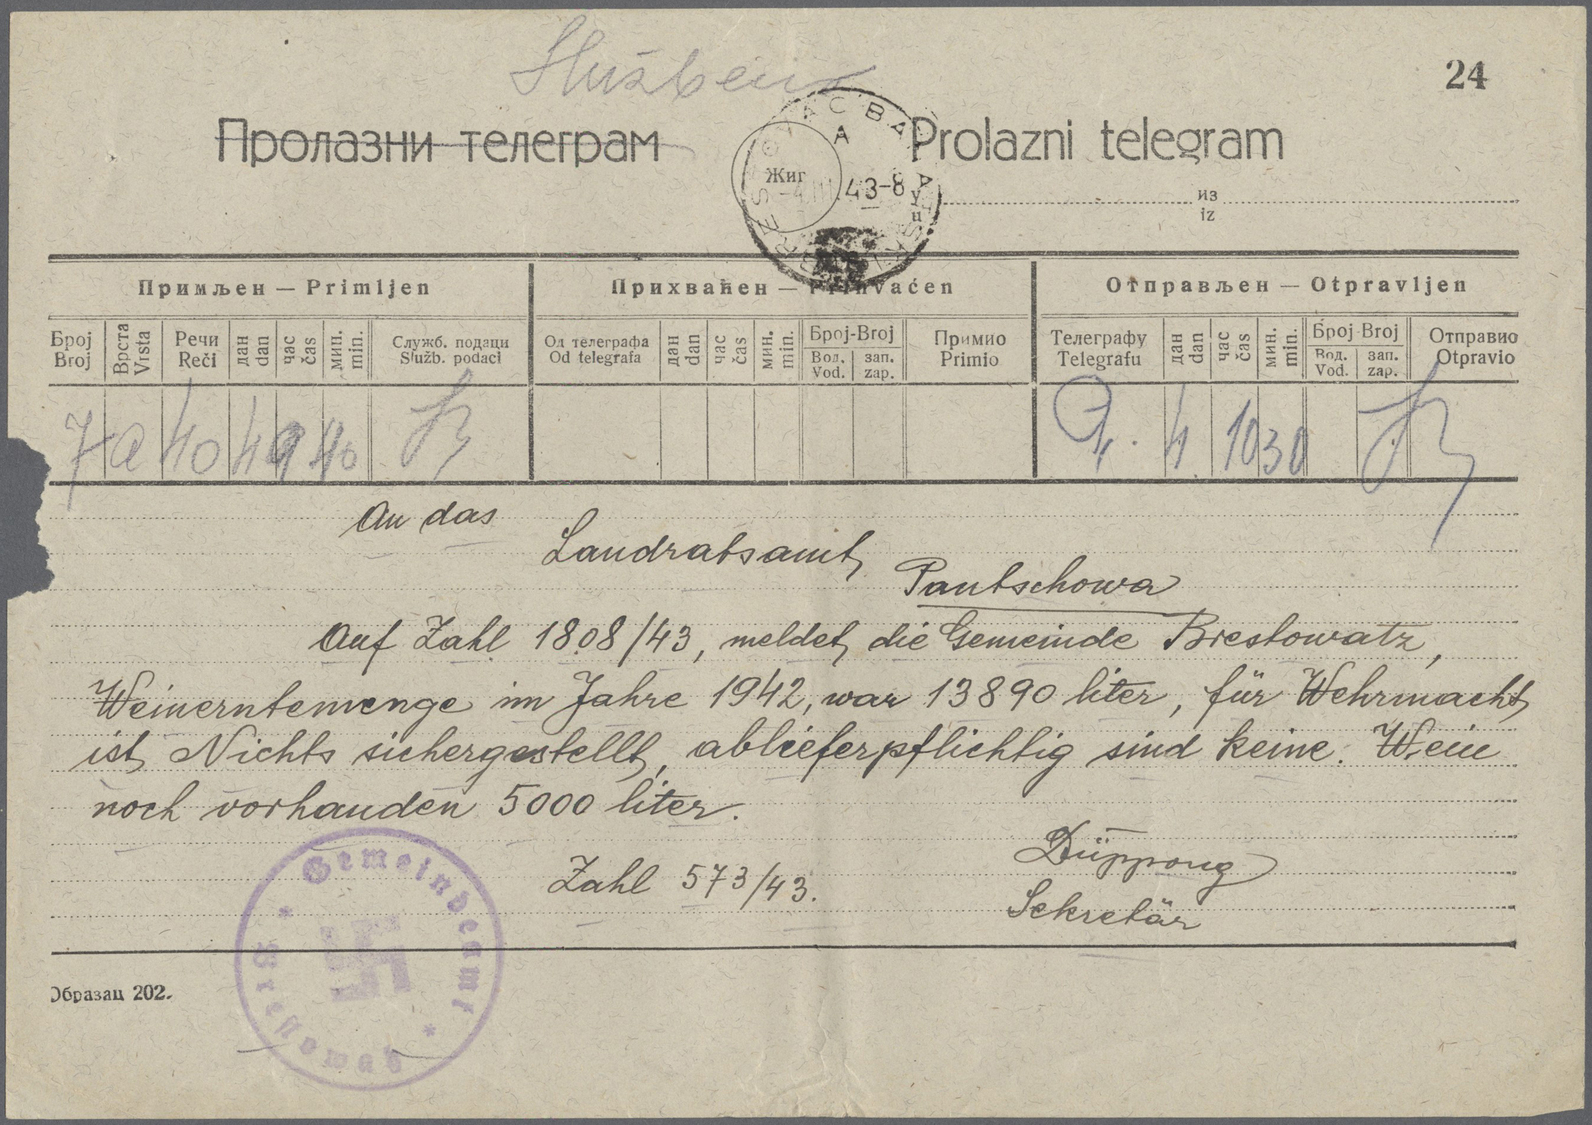 Br Dt. Besetzung II WK - Serbien: 1940/1944, Partie Von Schätzungsweise Ca. 250 TELEGRAMMEN Mit Interes - Bezetting 1938-45